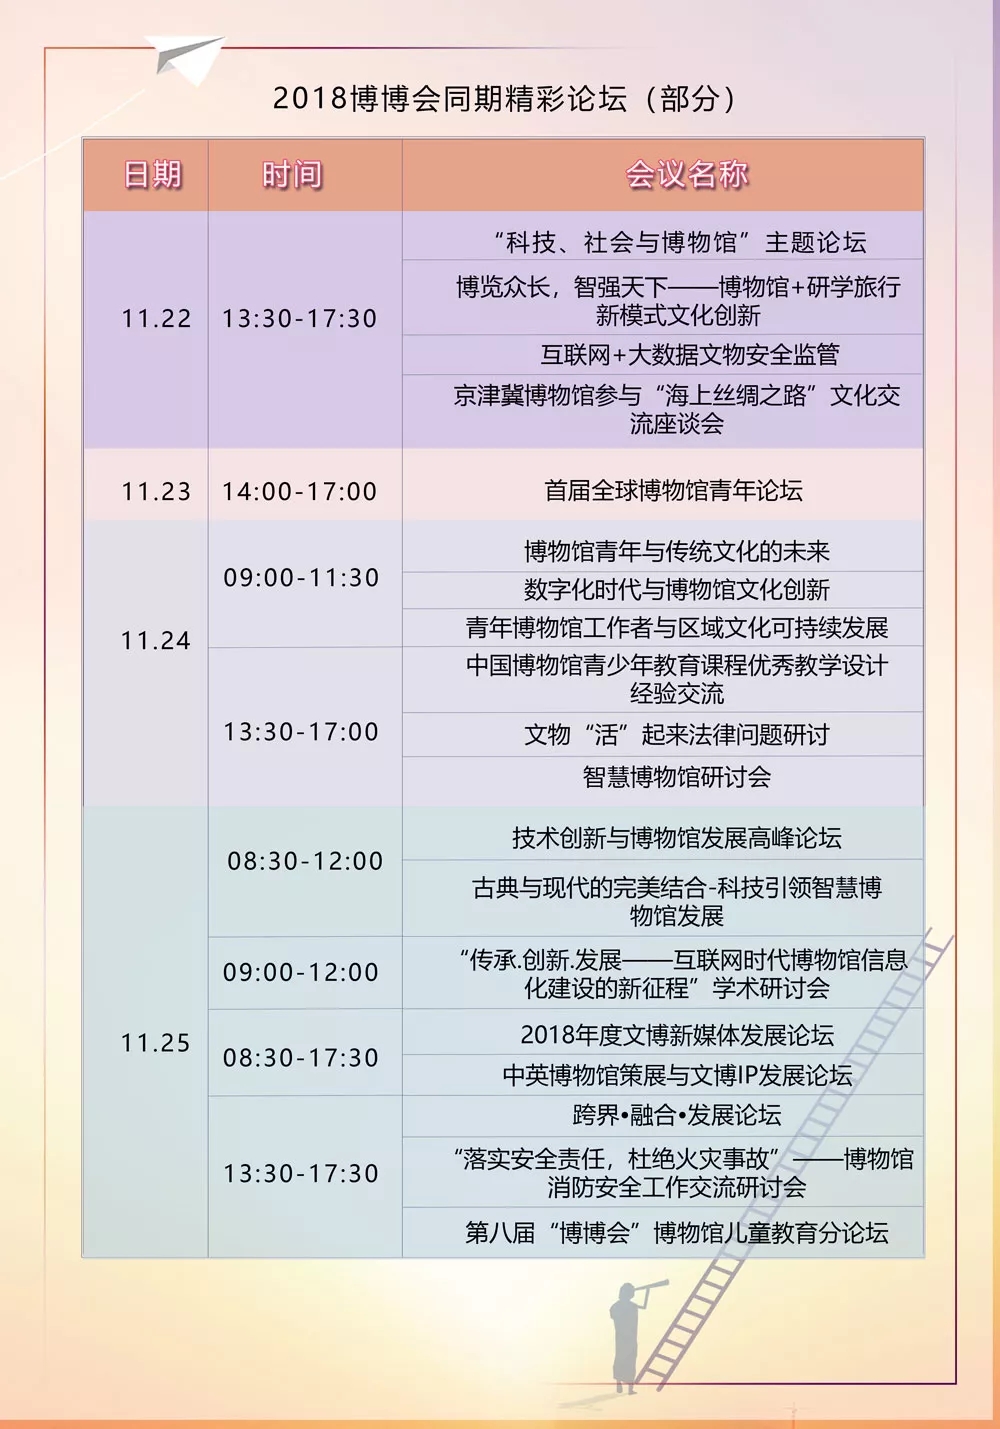 2018博博会议程——广州欧科